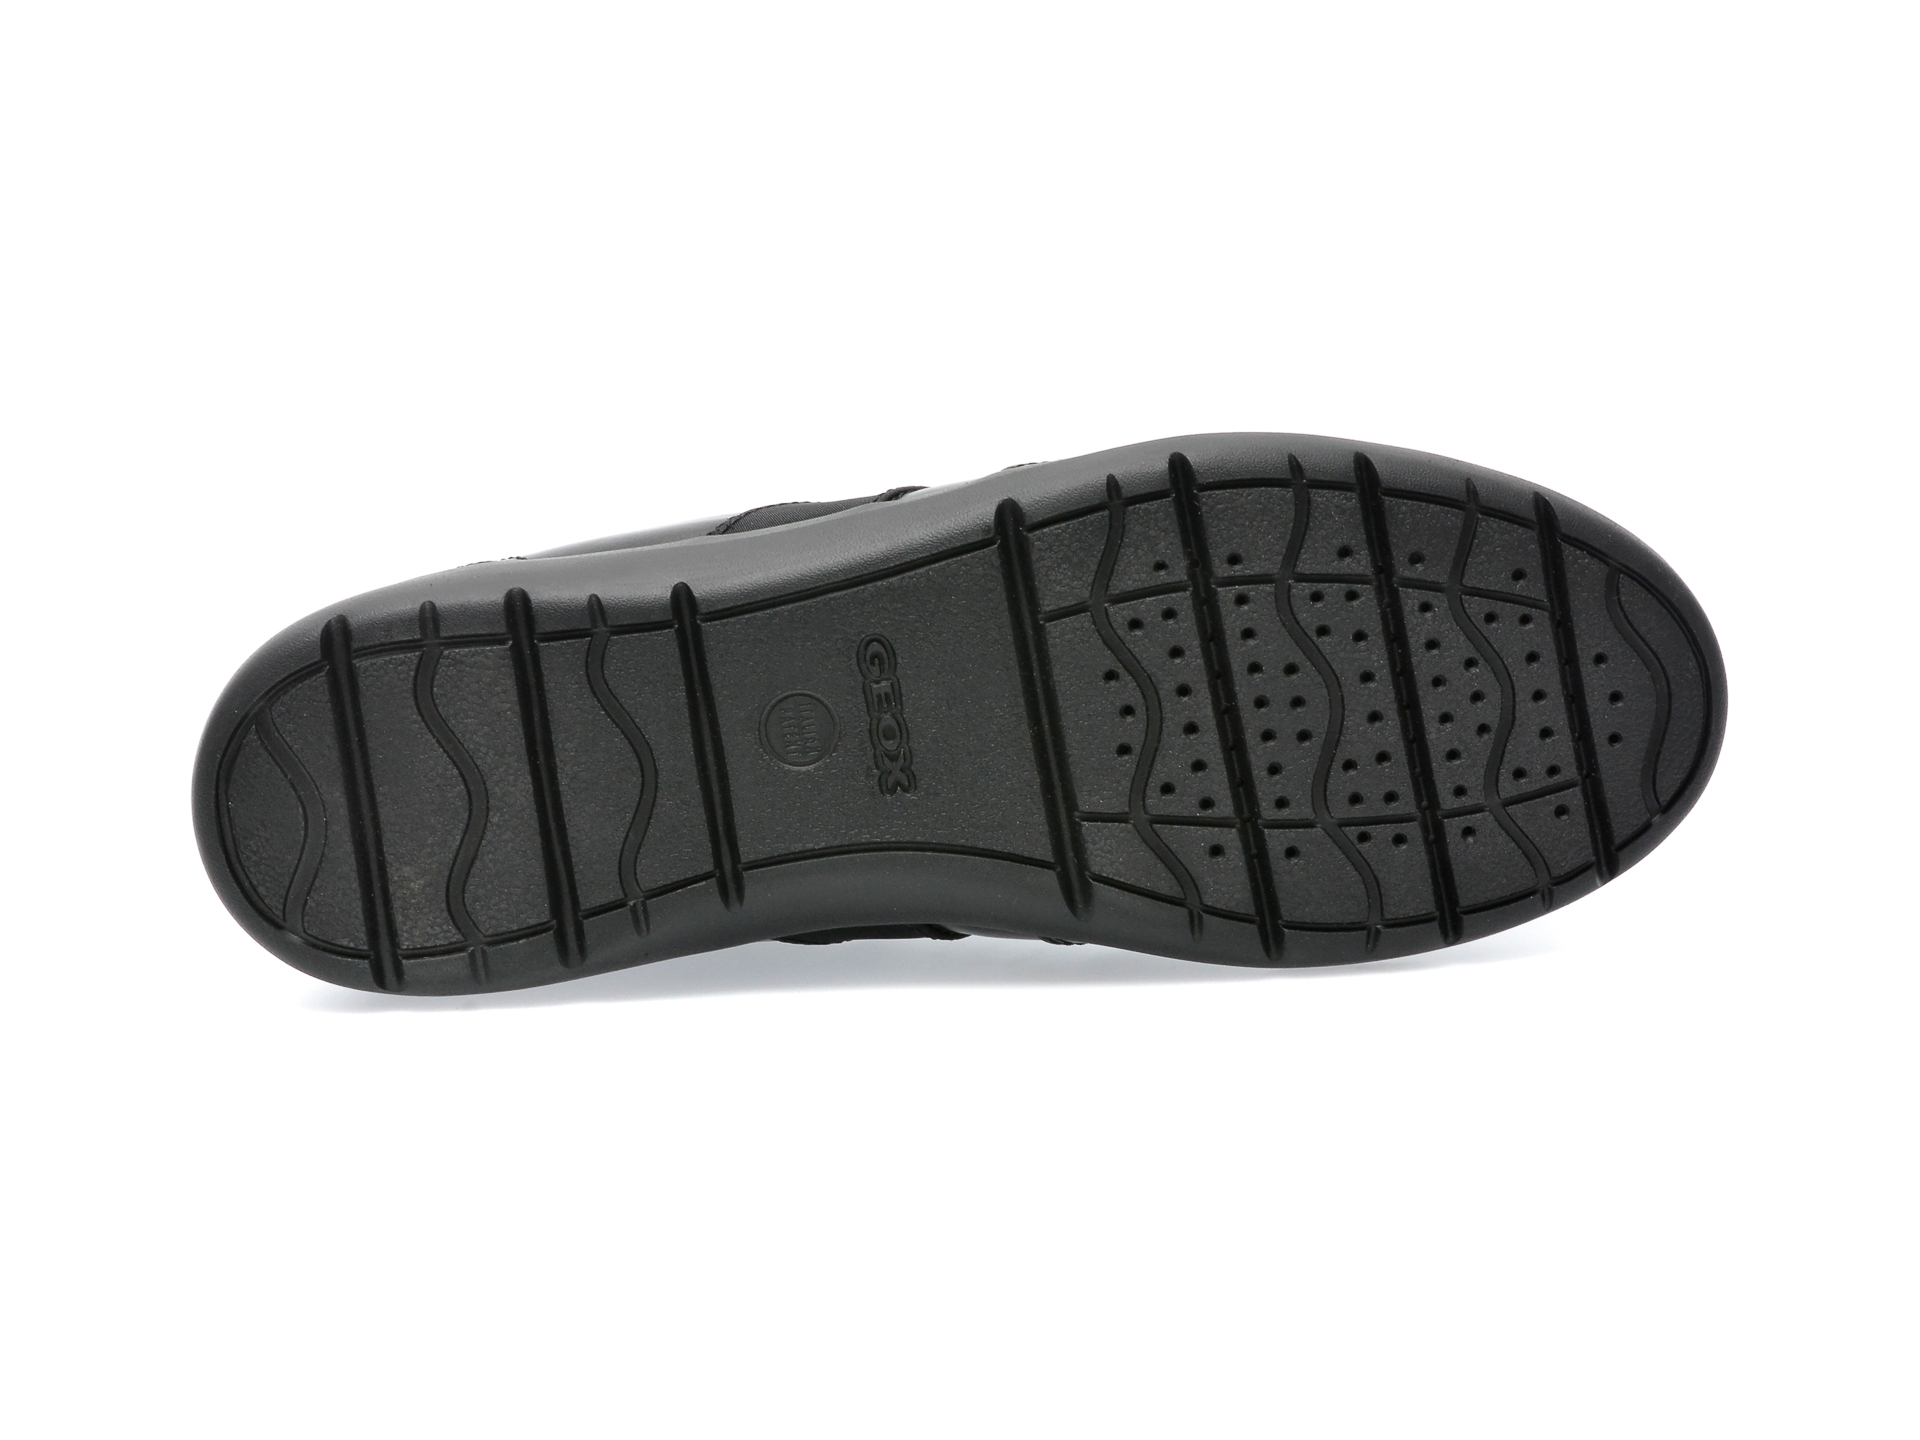 Poze Pantofi GEOX negri, U043QF, din piele naturala Tezyo